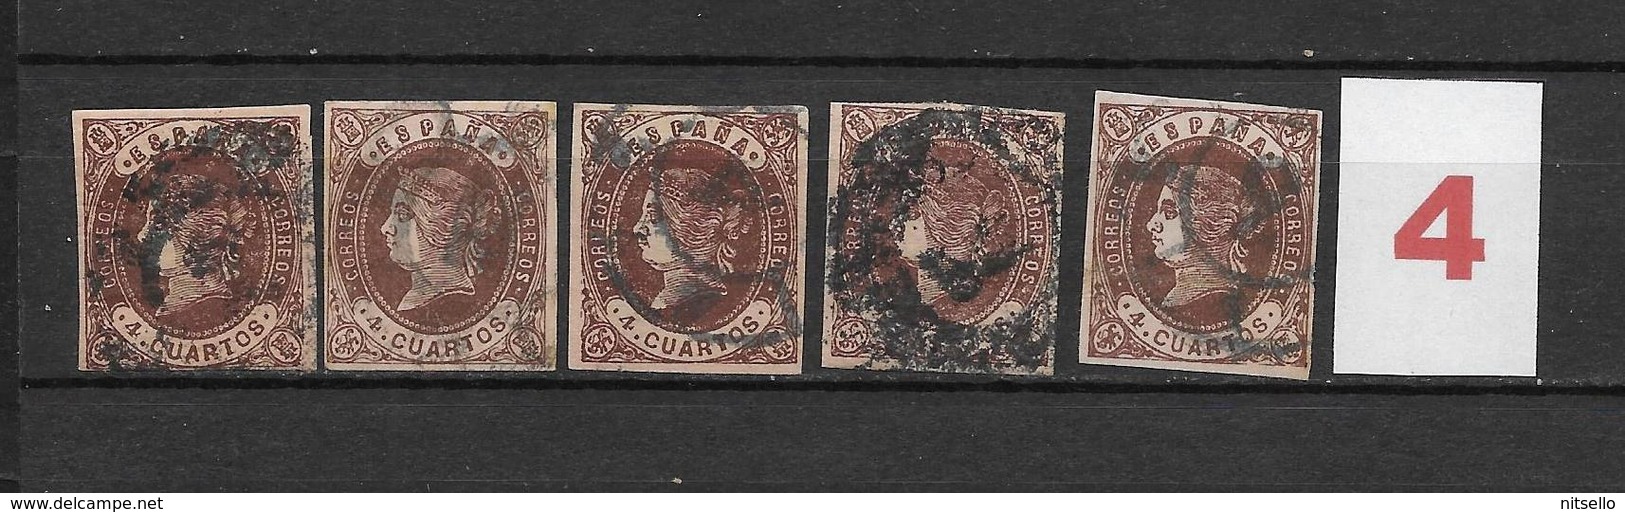 LOTE 1812  /// (C020) ESPAÑA  AÑO 1862   - EDIFIL Nº: 58  VARIEDADES DE COLOR  ¡¡¡ OFERTA !!! - Used Stamps